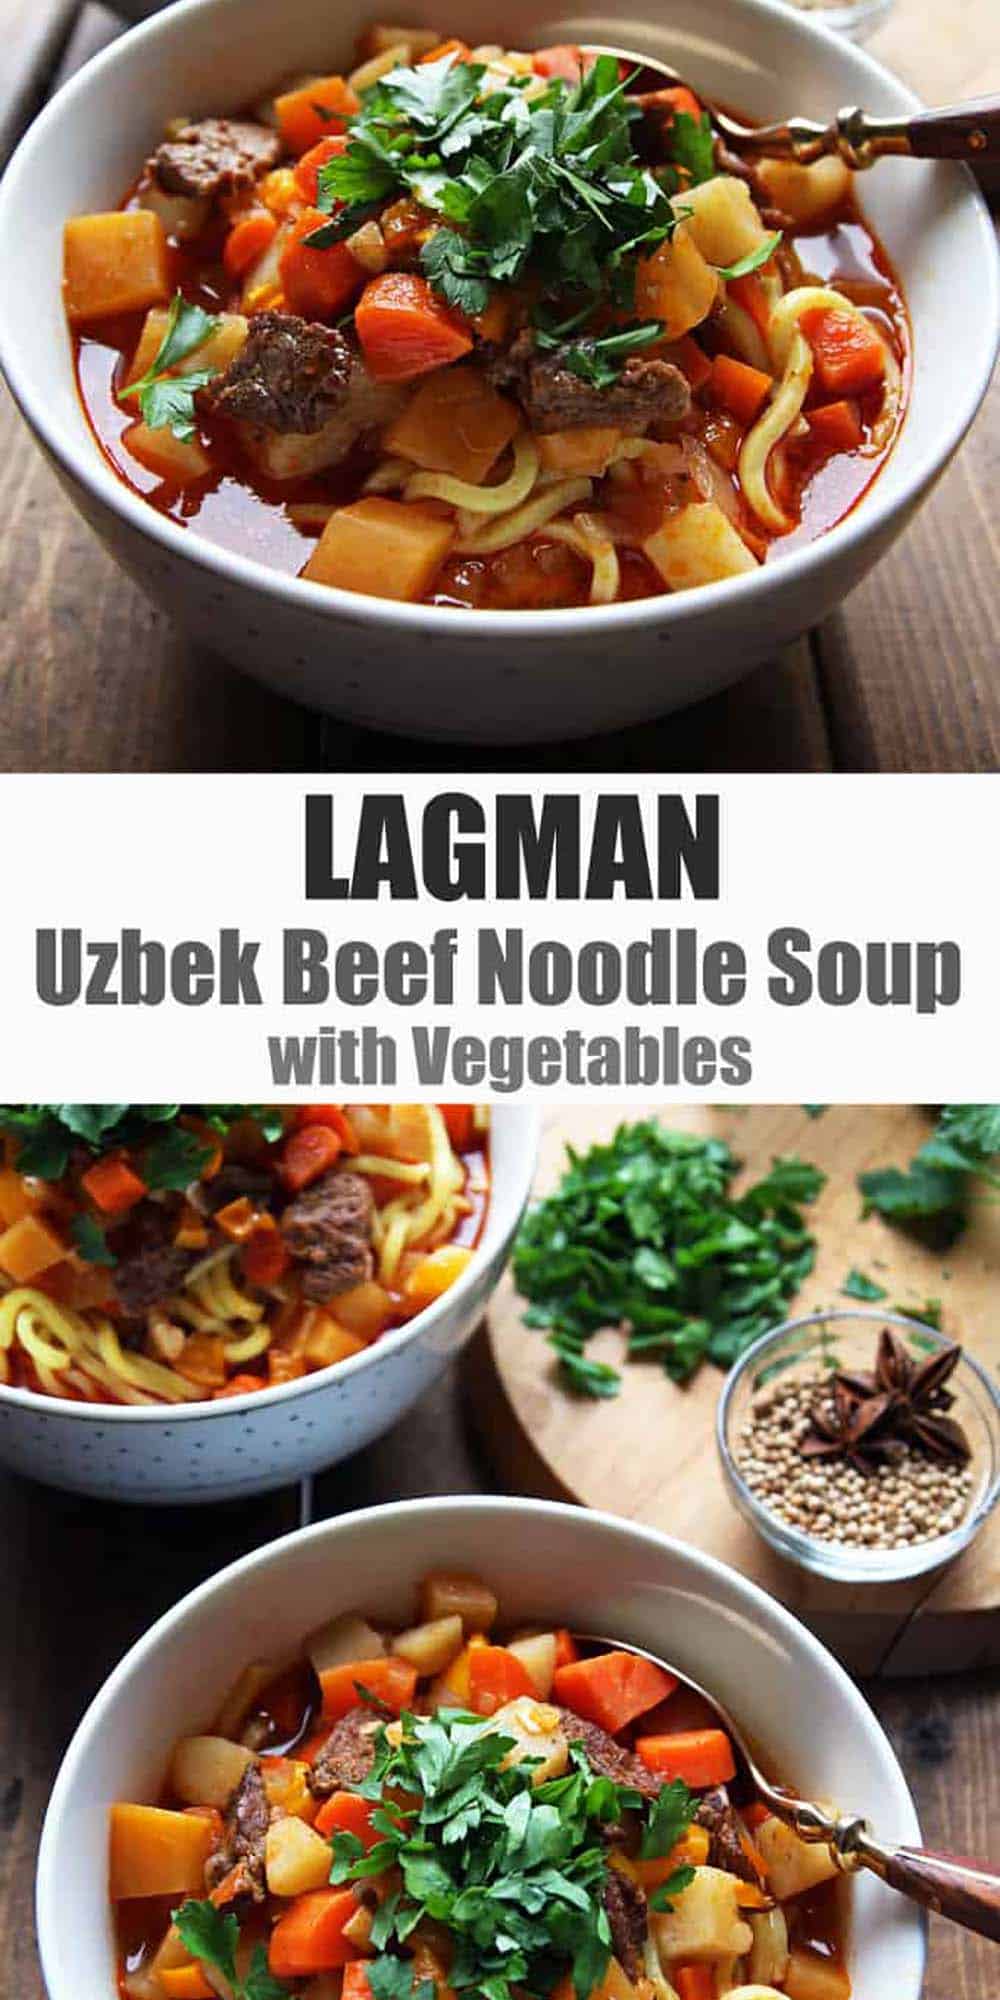 Lagman Recipe - Uzbek Beef Noodle Soup with Vegetables